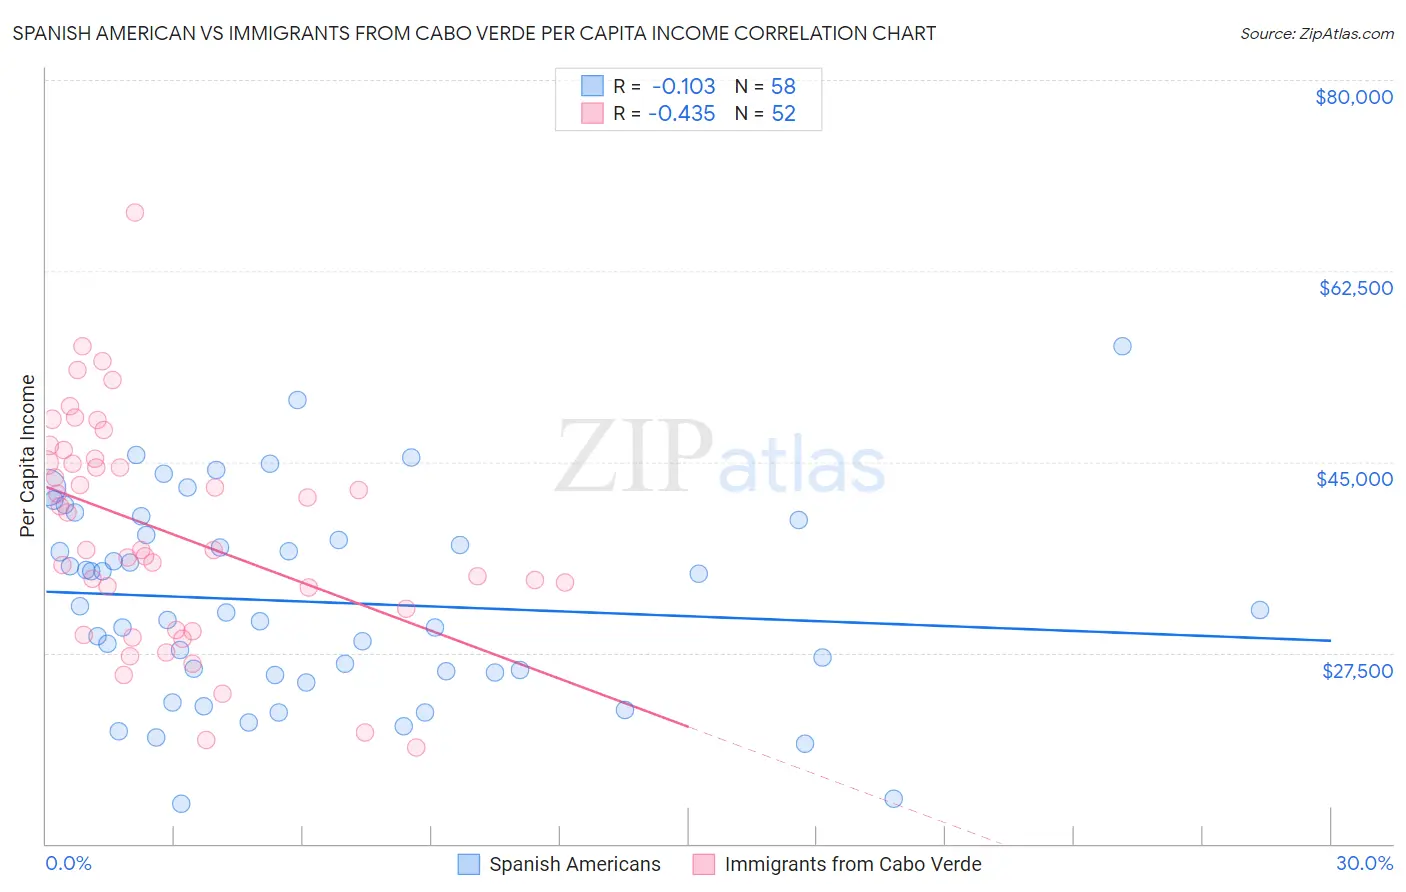 Spanish American vs Immigrants from Cabo Verde Per Capita Income